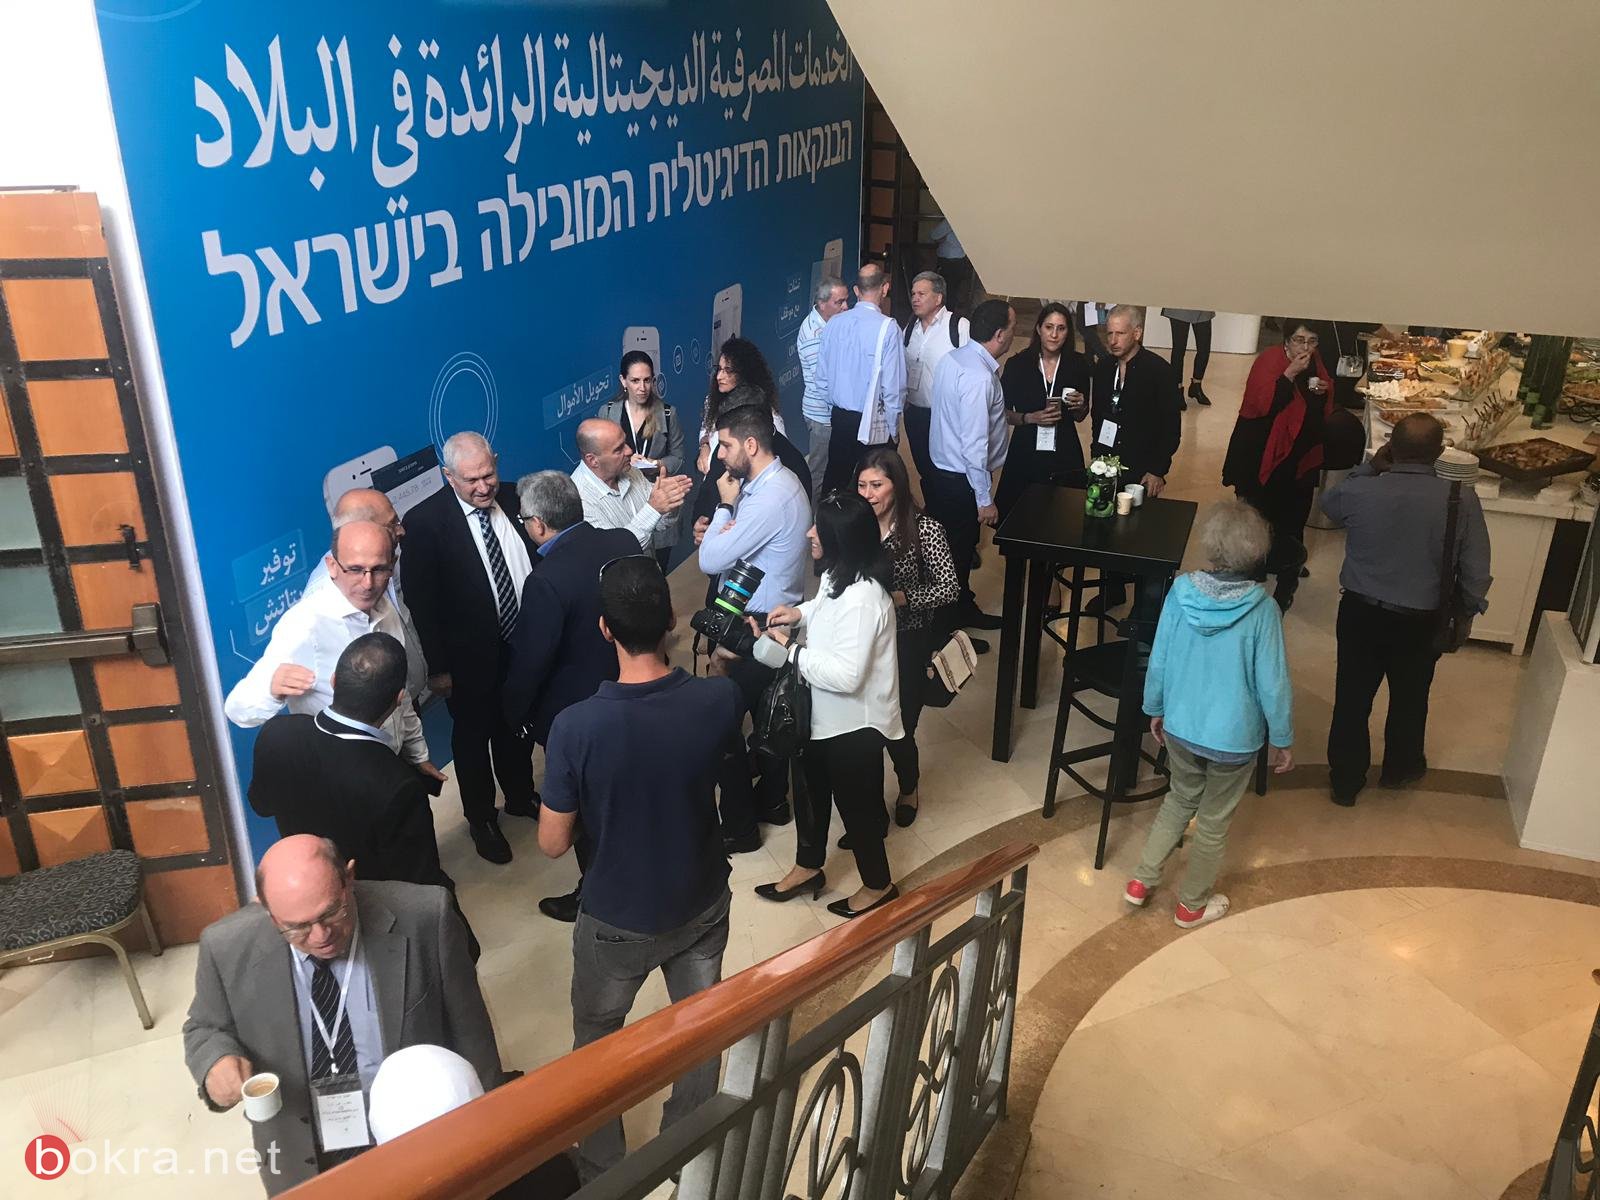  انطلاق أعمال "مؤتمر الاقتصاد في المجتمع العربي" لـ TheMarker وبنك لئومي في الناصرة -9